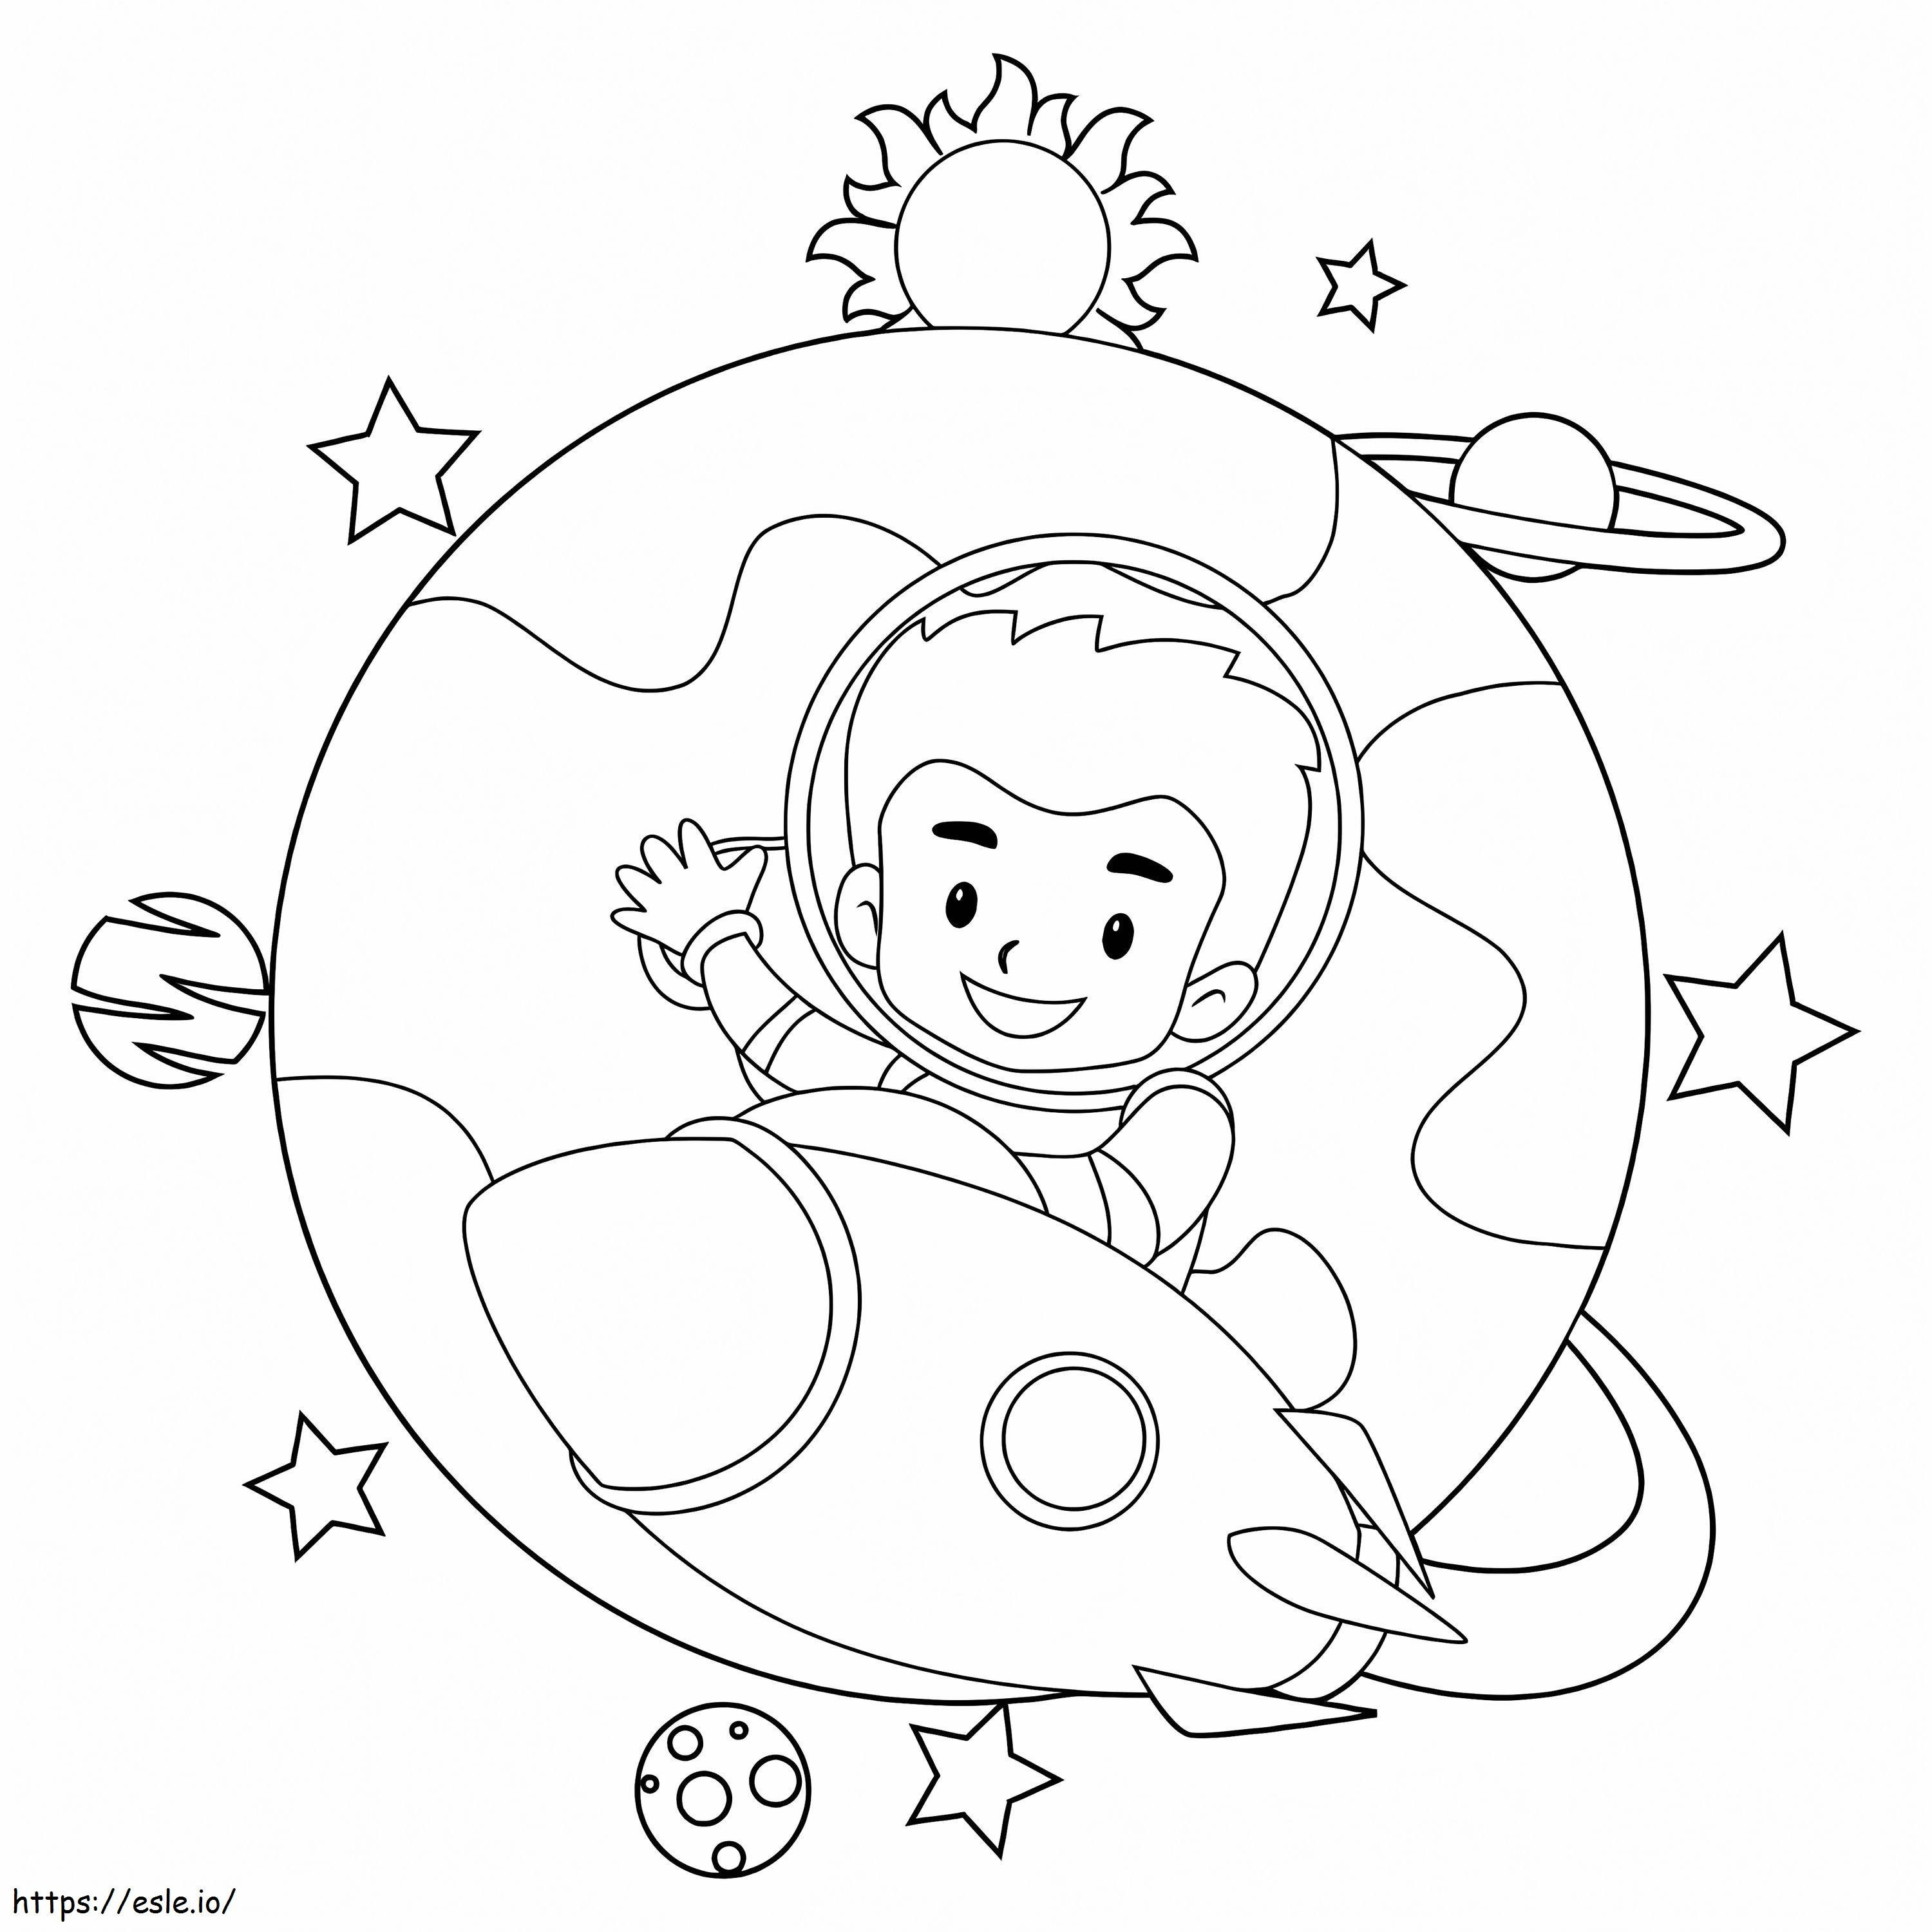 Kinderastronauts aus dem Weltraum ausmalbilder